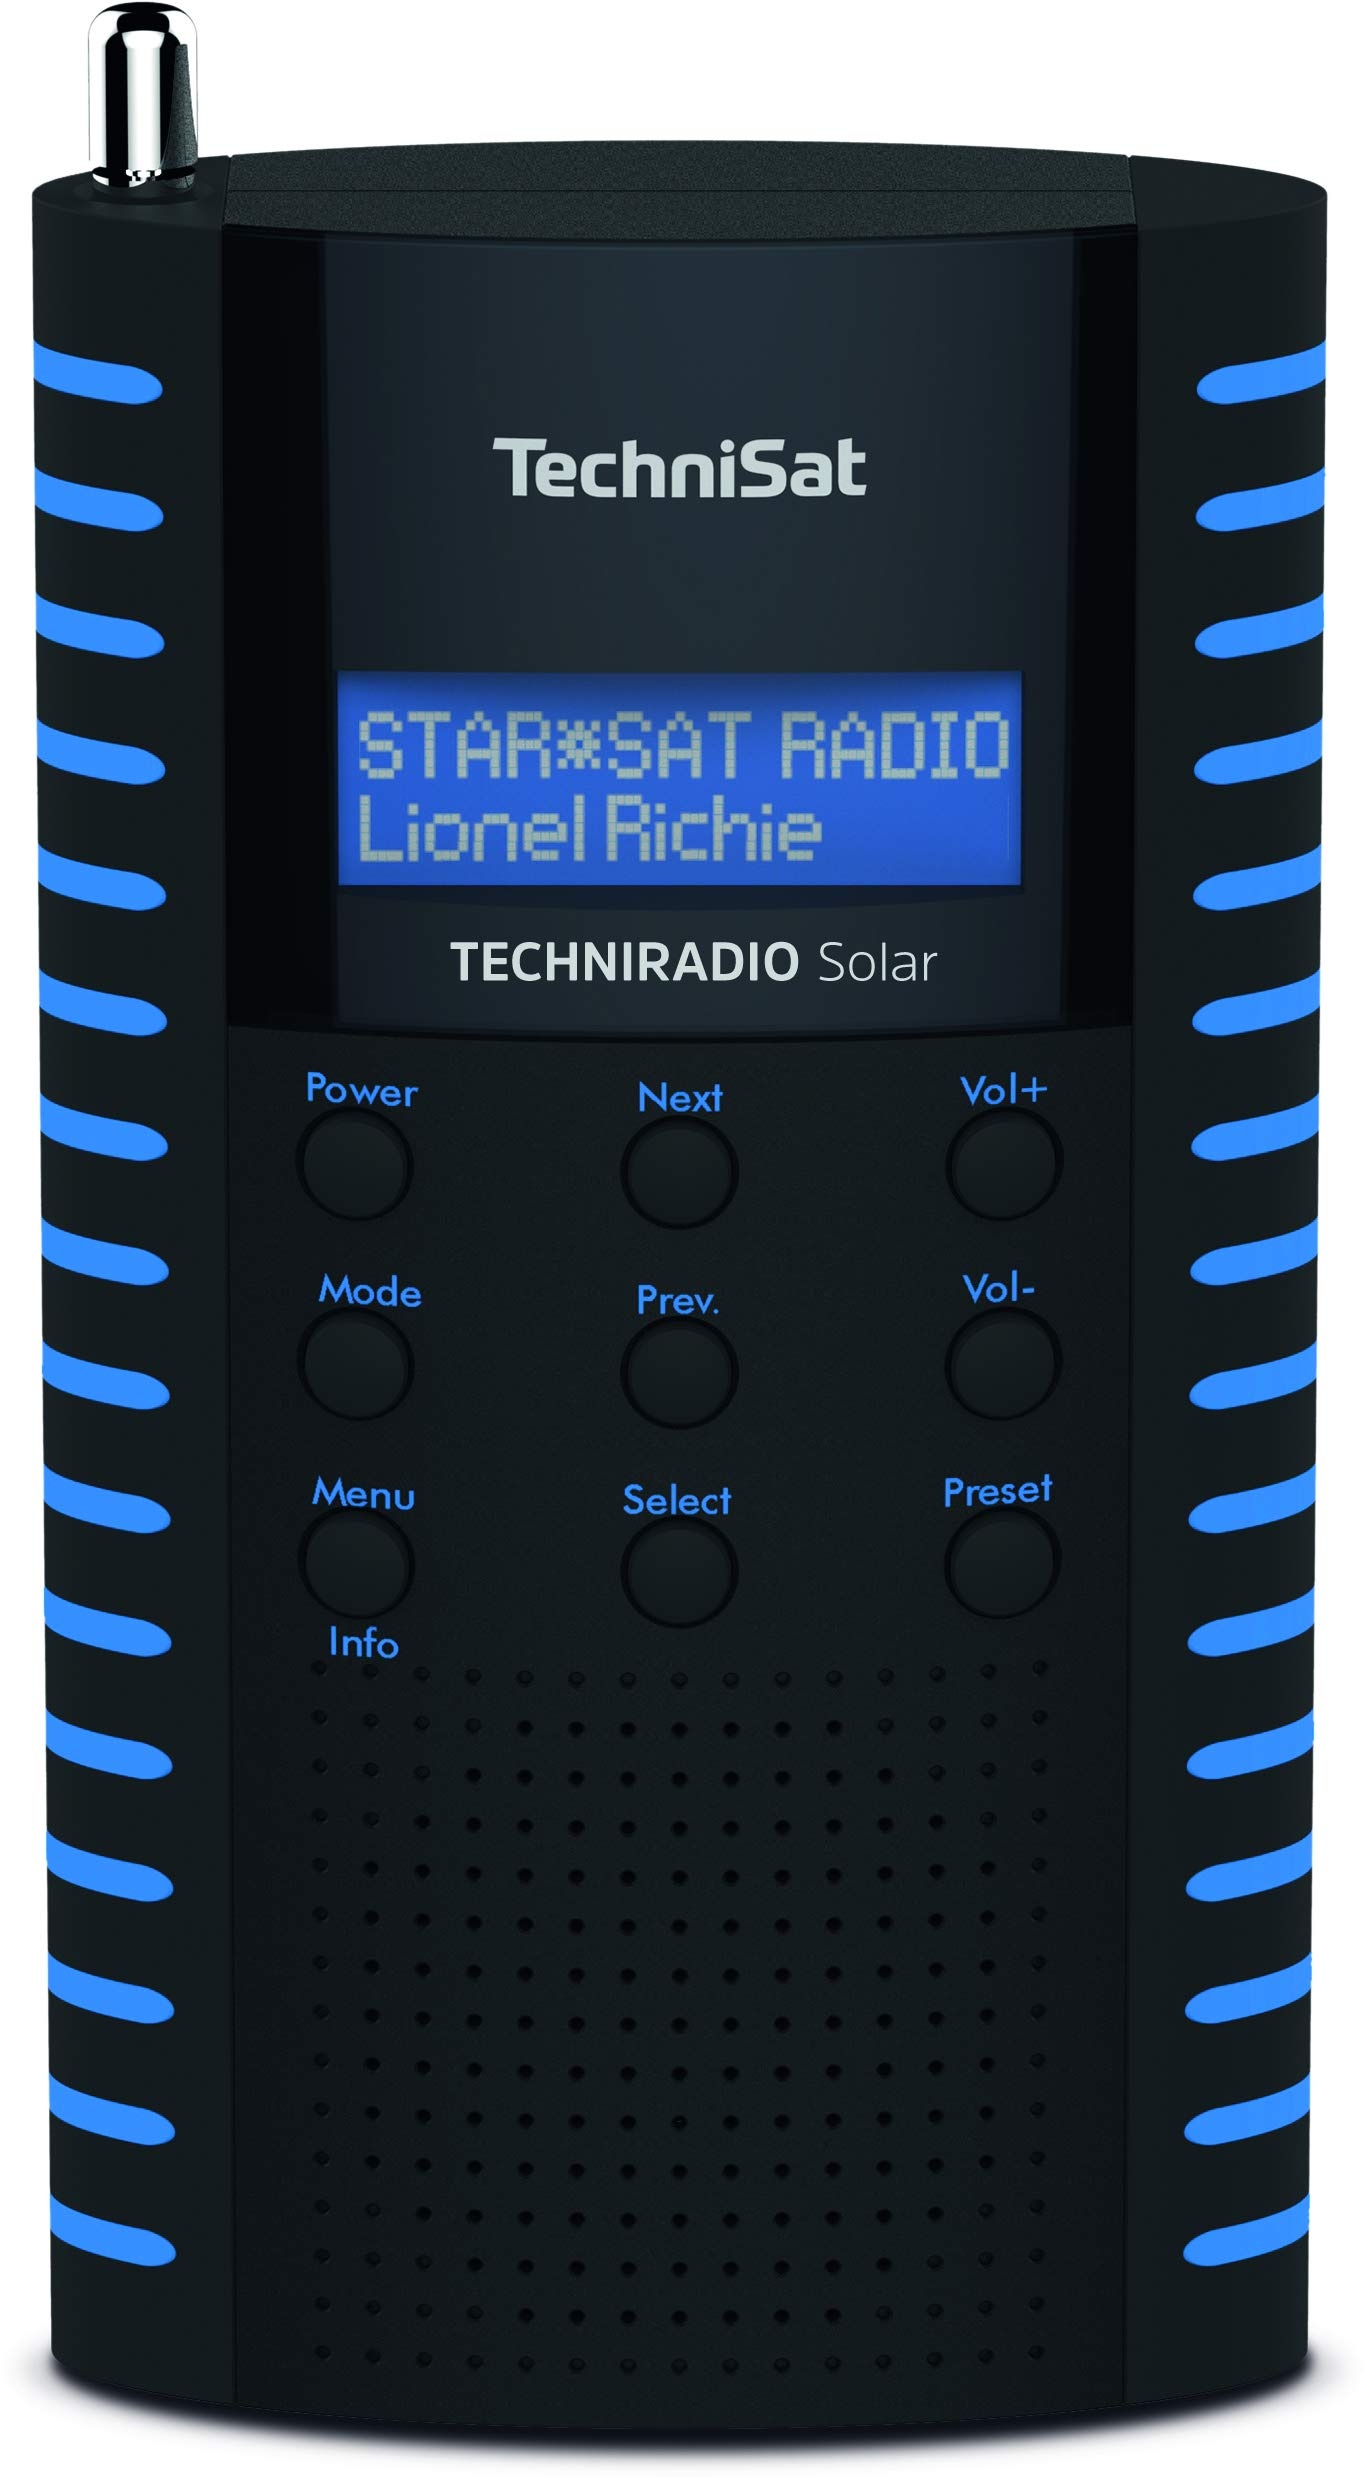 TechniSat TechniRadio Solar tragbares DAB Radio (DAB+, UKW, Kopfhöreranschluss, Aufladung über Solarpanel, IPX 5 spritzwassergeschützt) schwarz/blau